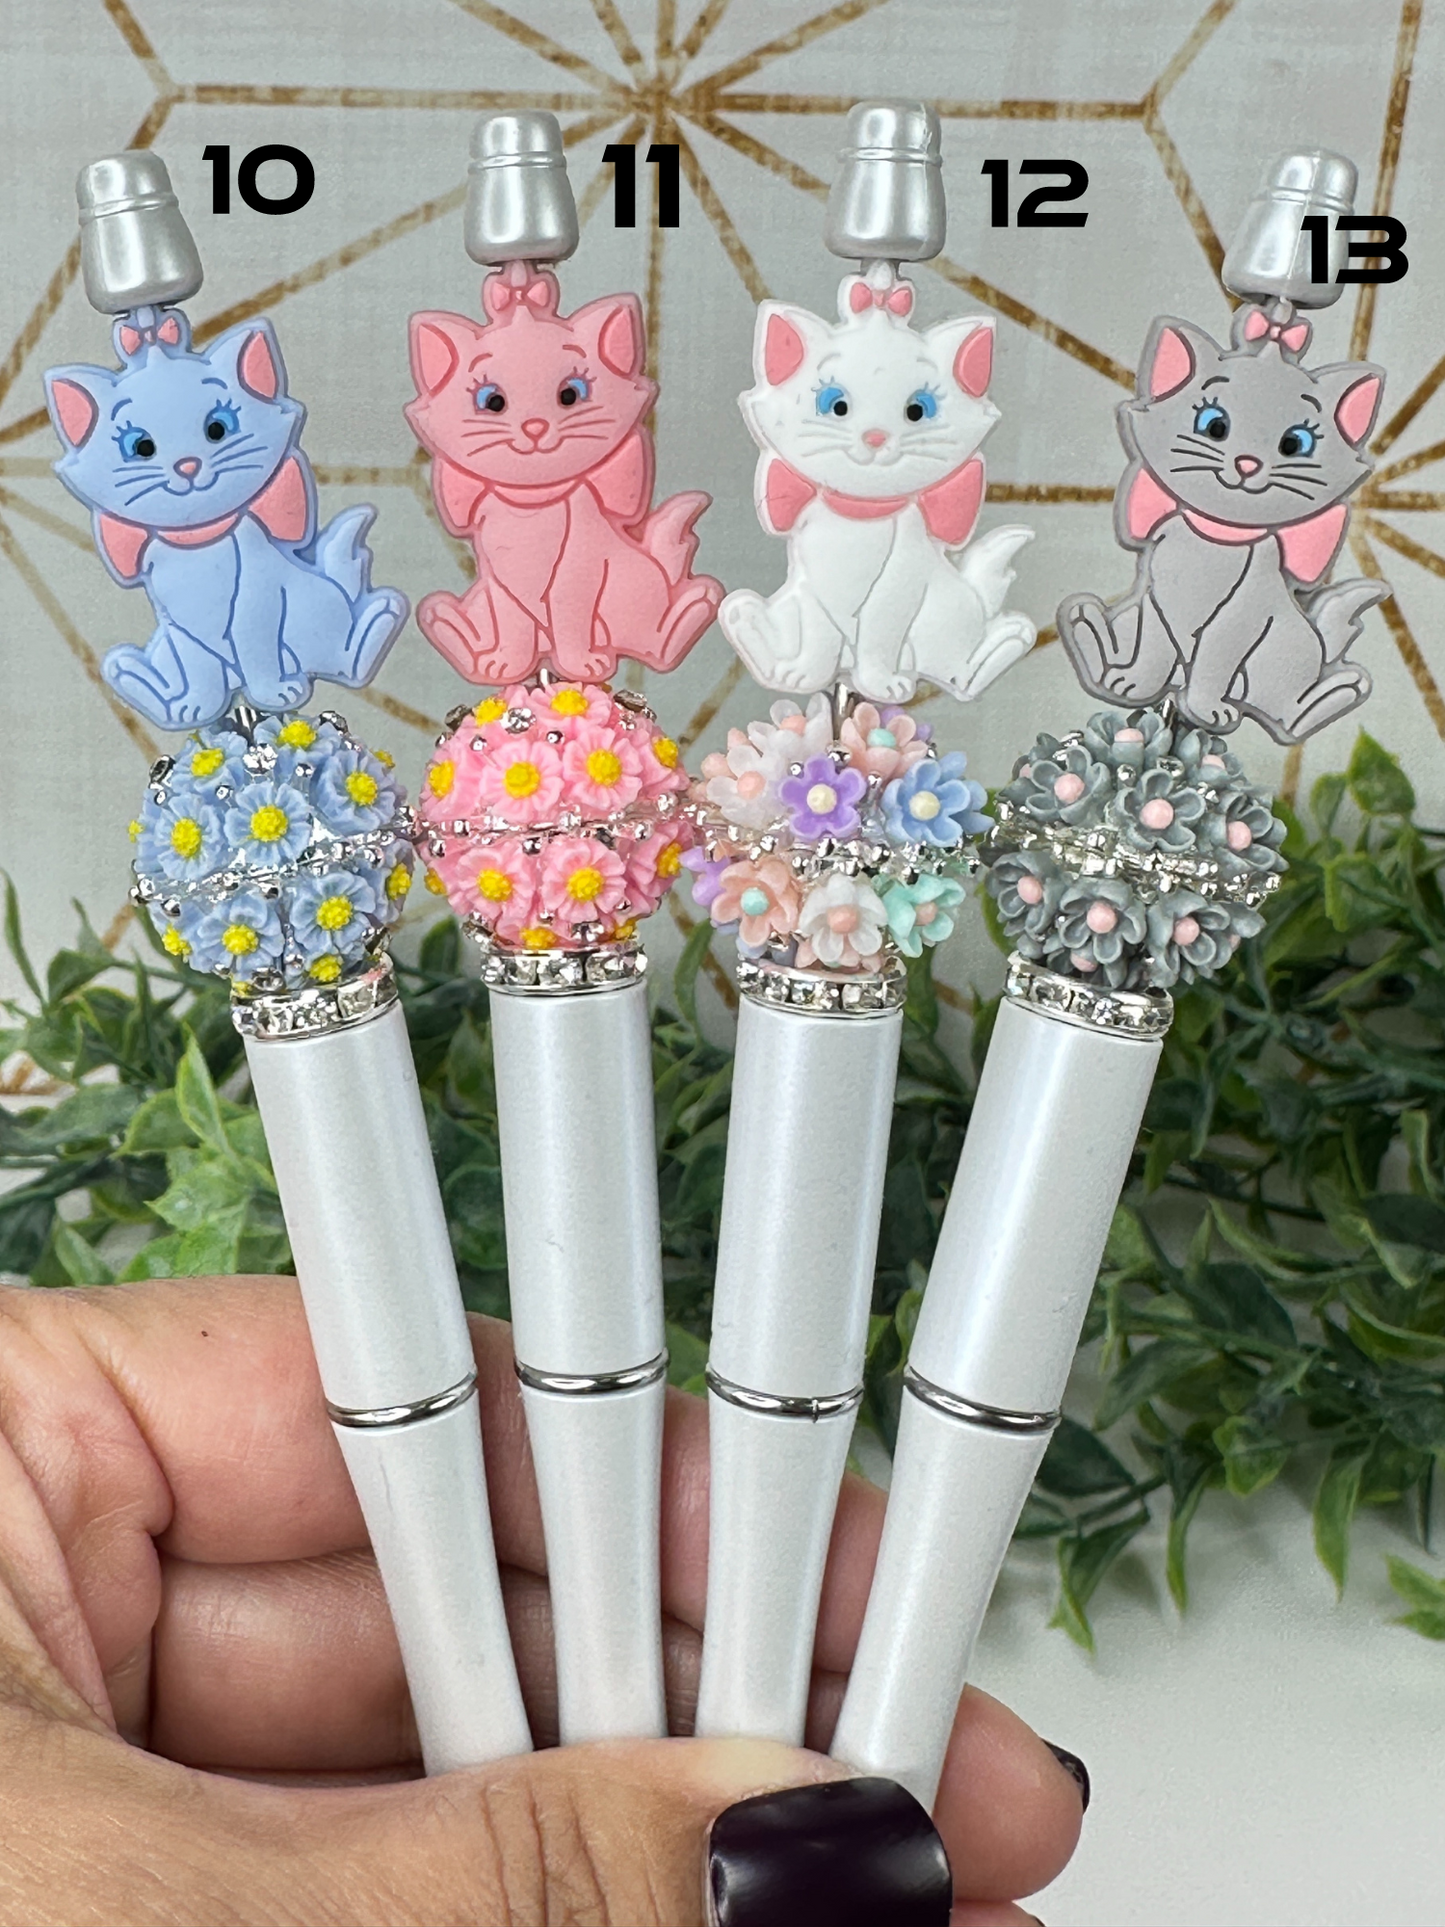 Magic Custom Pens Con't 2